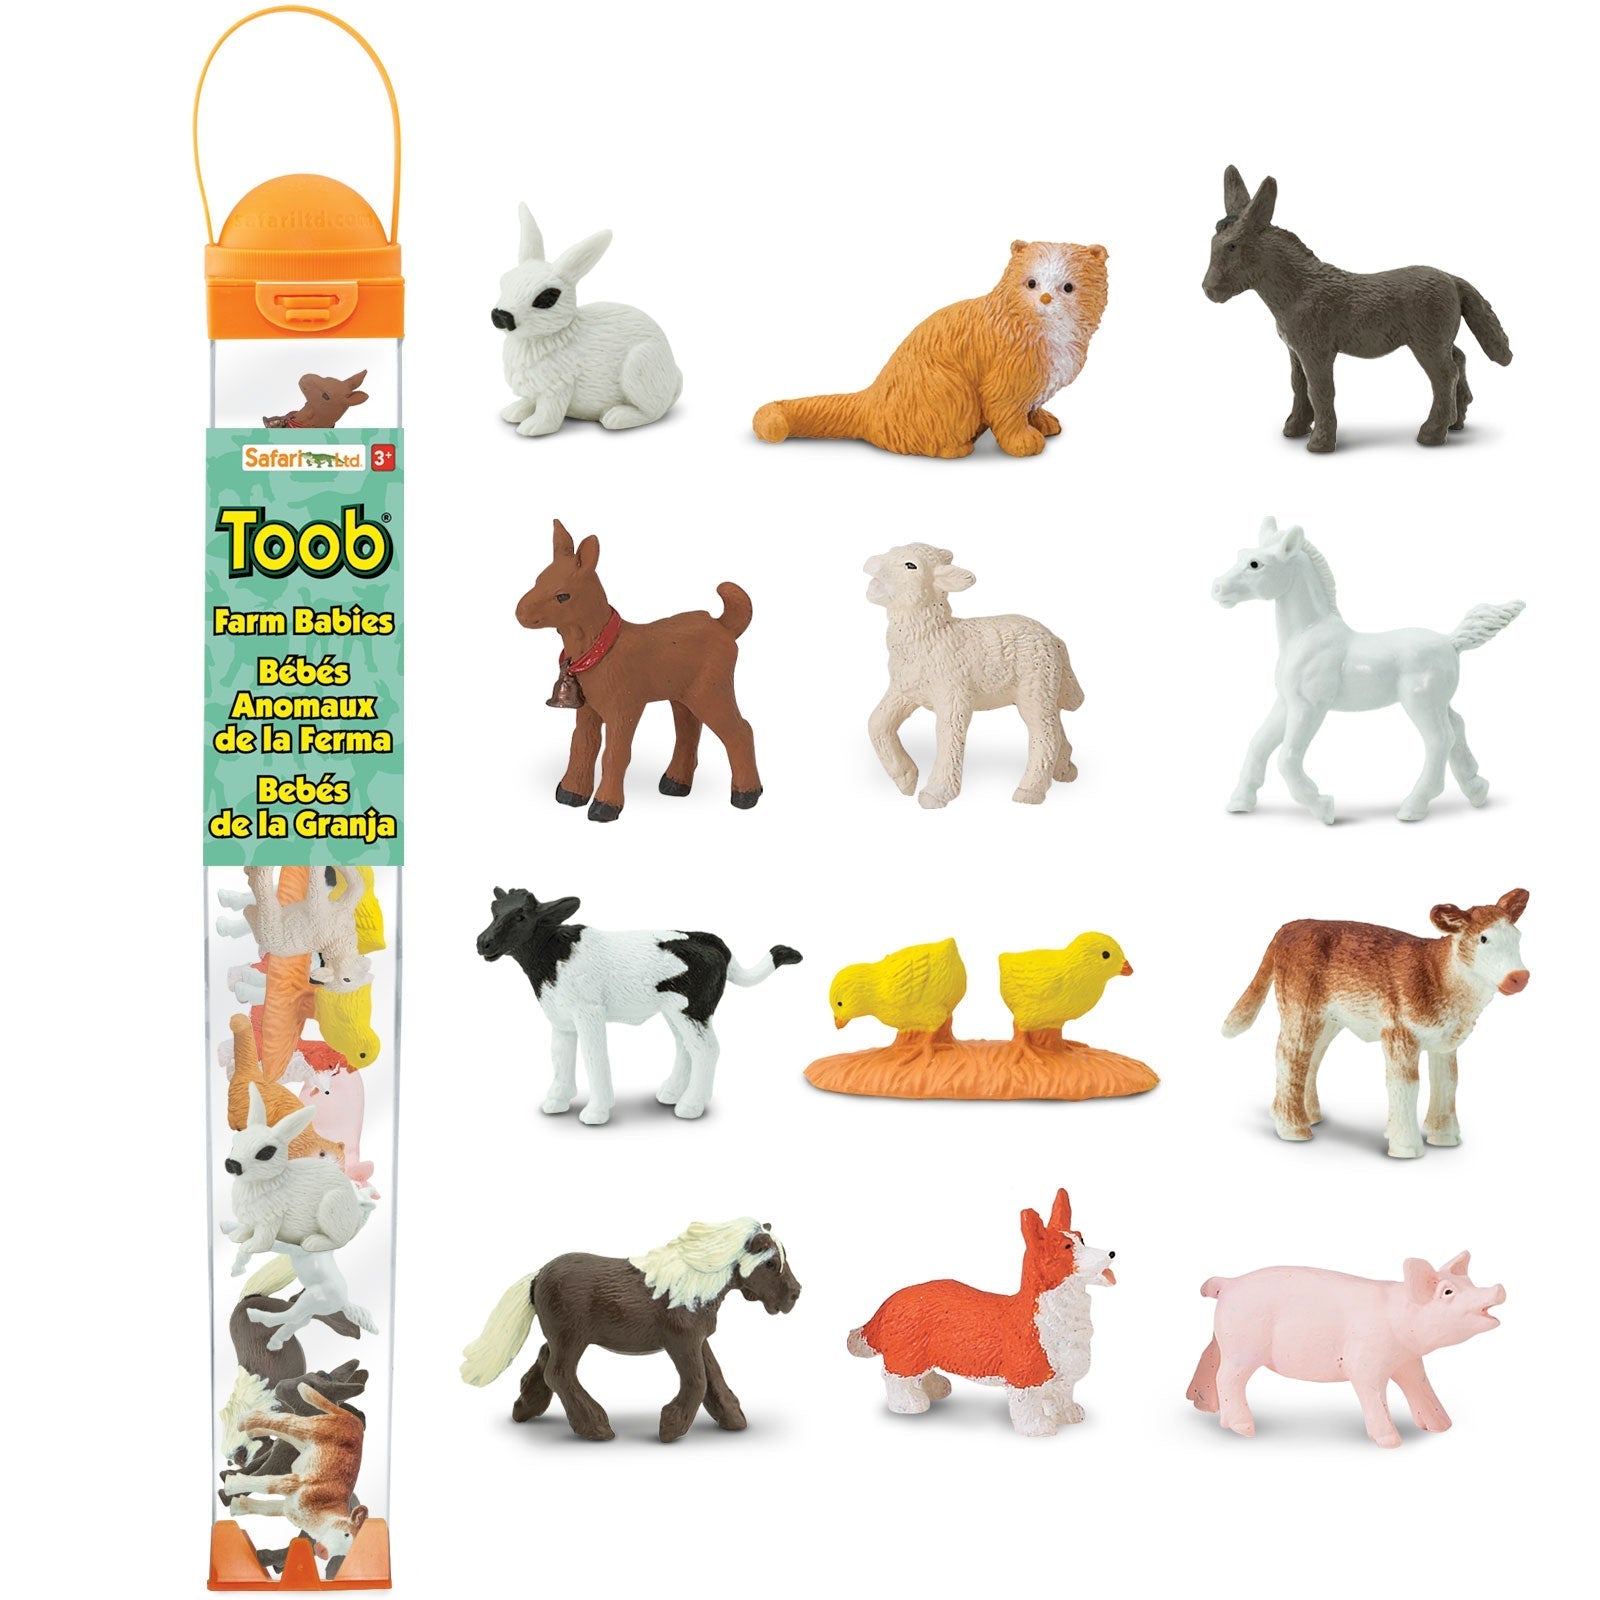 Safari Ltd: Figuren in Tuba Small Animals Farm Babies Toob 12 PCs.